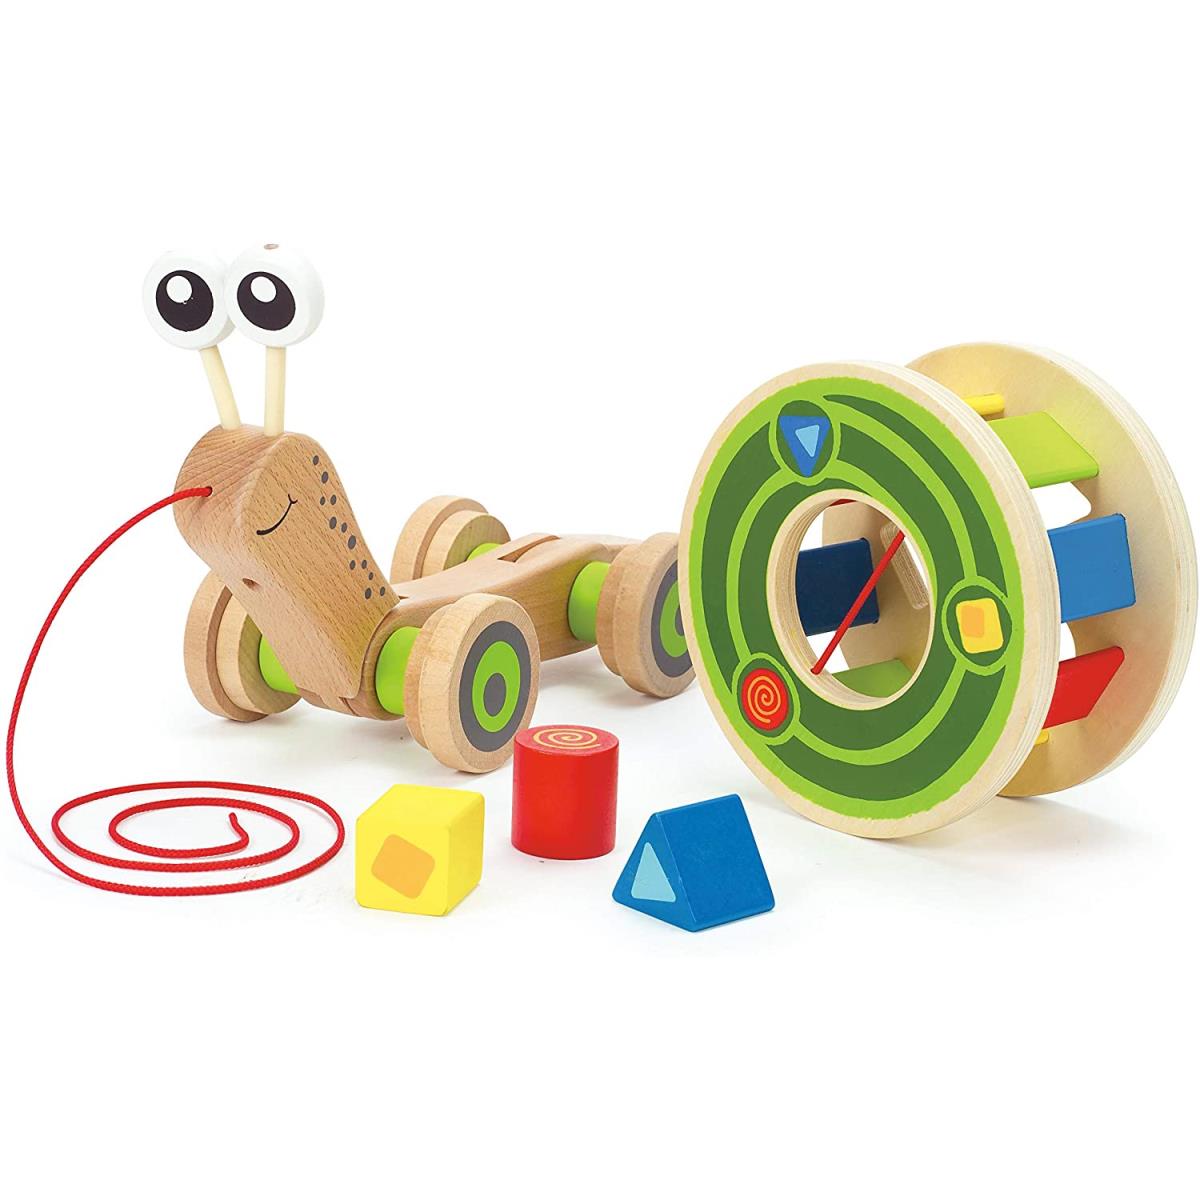 Hape Nachziehspielzeug Schnecke Ziehspielzeug aus Holz Schneckenhaus Spielzeug,Hape,E0349, 6943478008816